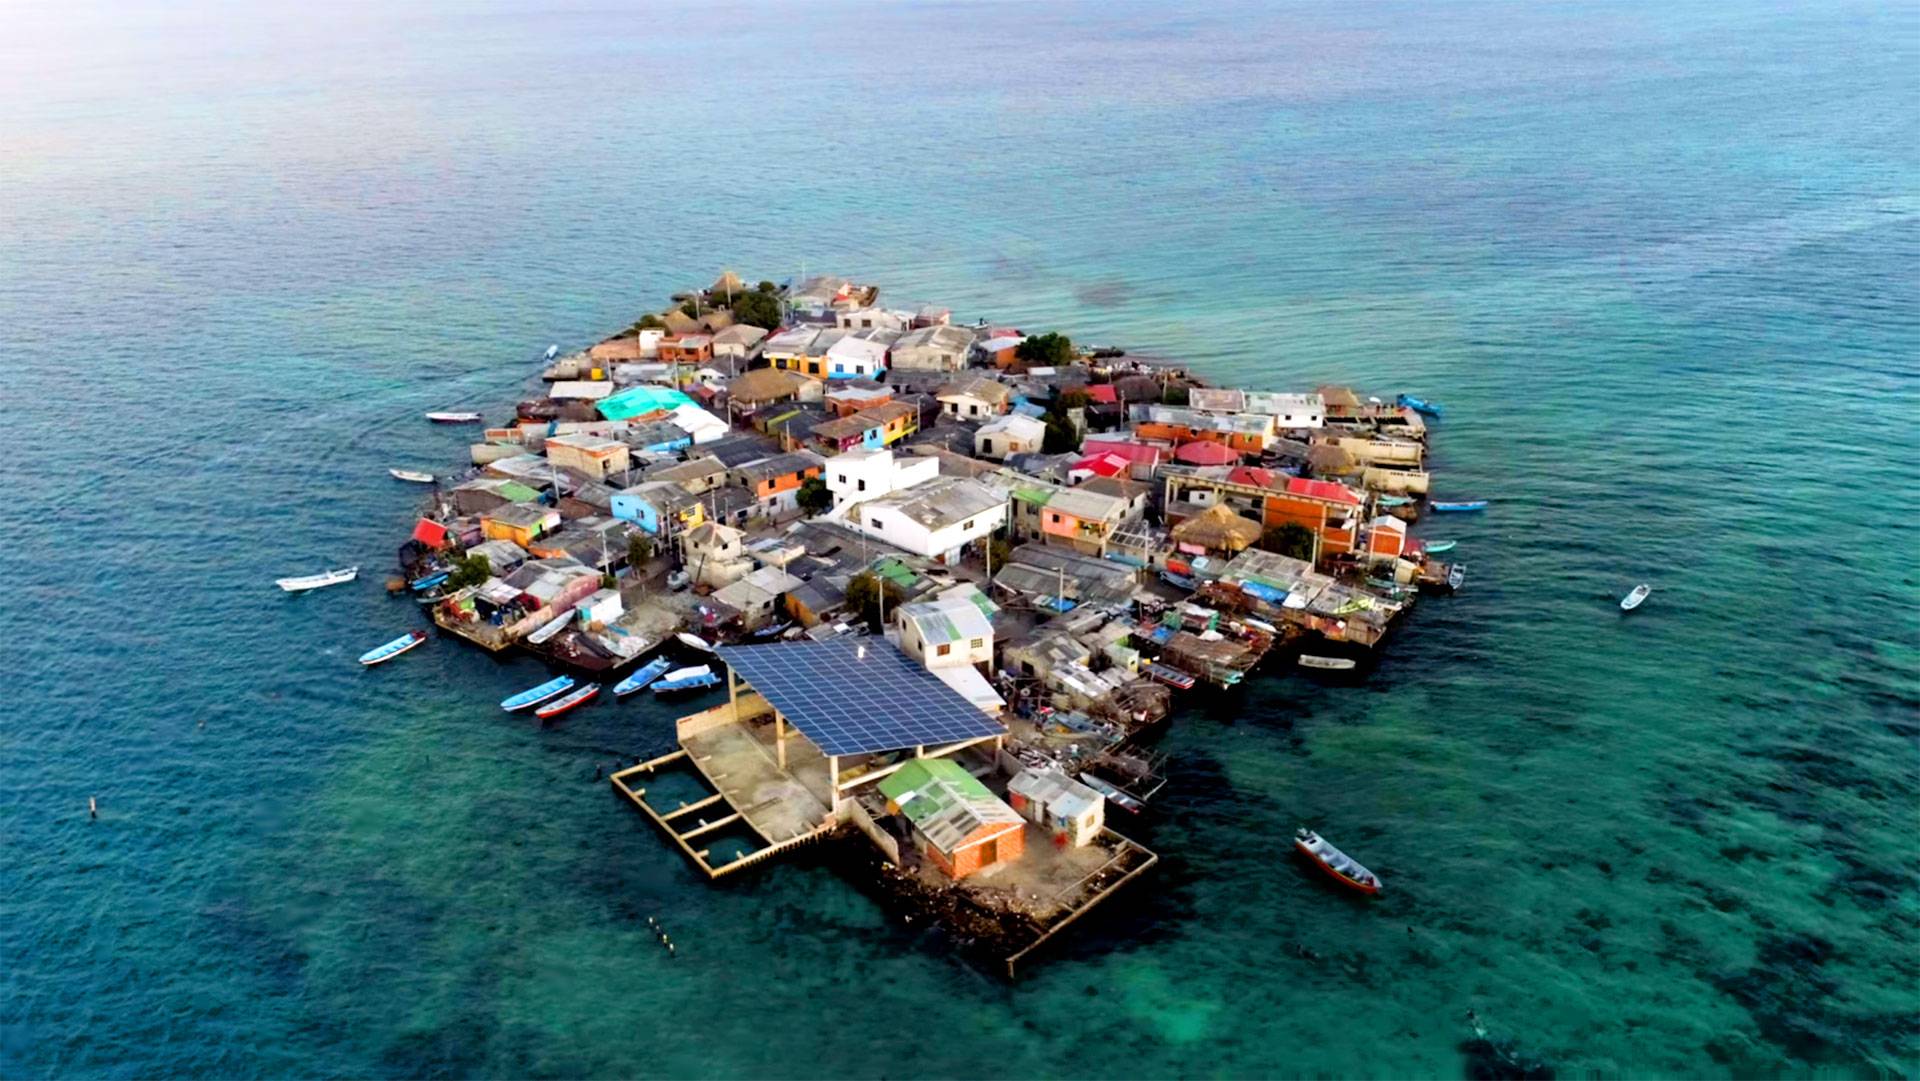 Полностью забит зданиями: как живут люди на самом густонаселенном острове в мире?